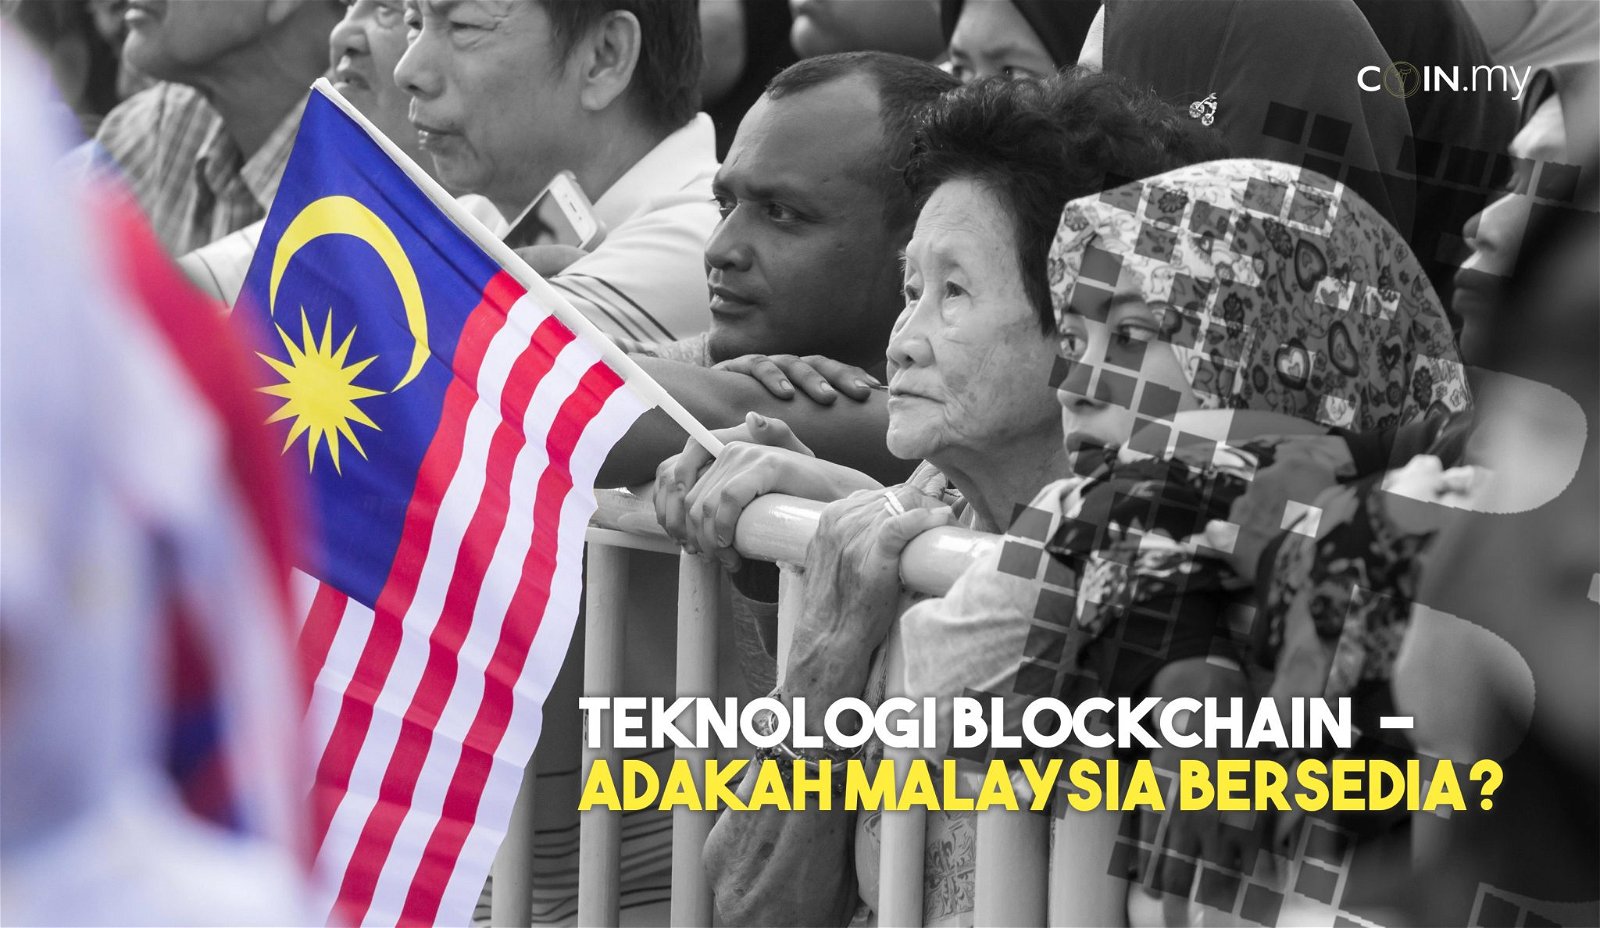 an image on a post on teknologi Blockchain Malaysia